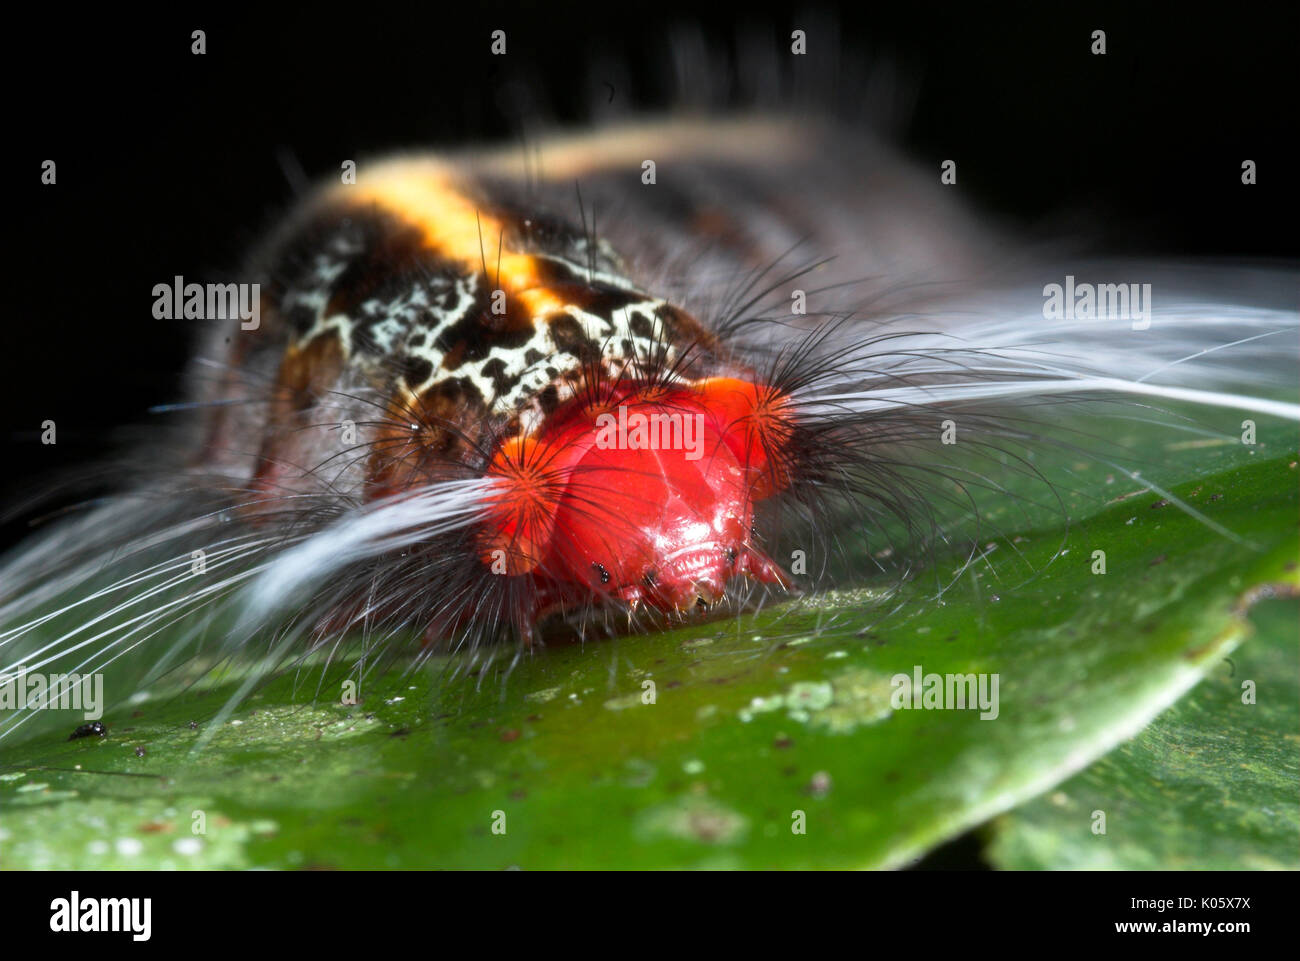 Caterpillar, Arten unbekannt, auf Blatt mit urticating Haare, Manu, Peru, Amazonas Dschungel, lepidopterism, rot mit gelben Streifen und schwarzer Körper, por Stockfoto